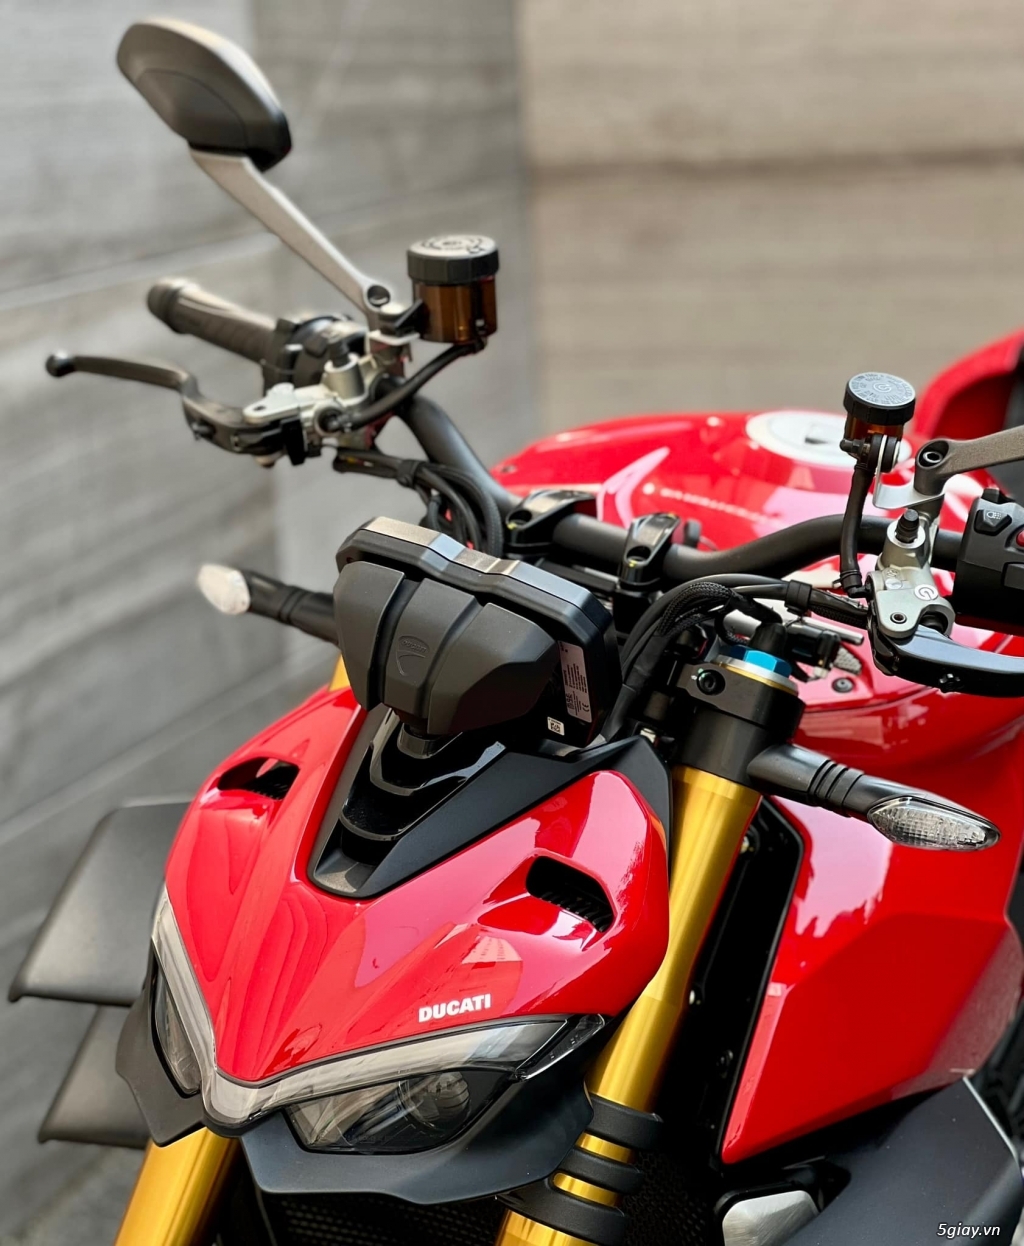 Ducati 899 Panigale 2021 Chính Hãng New 100% - 11